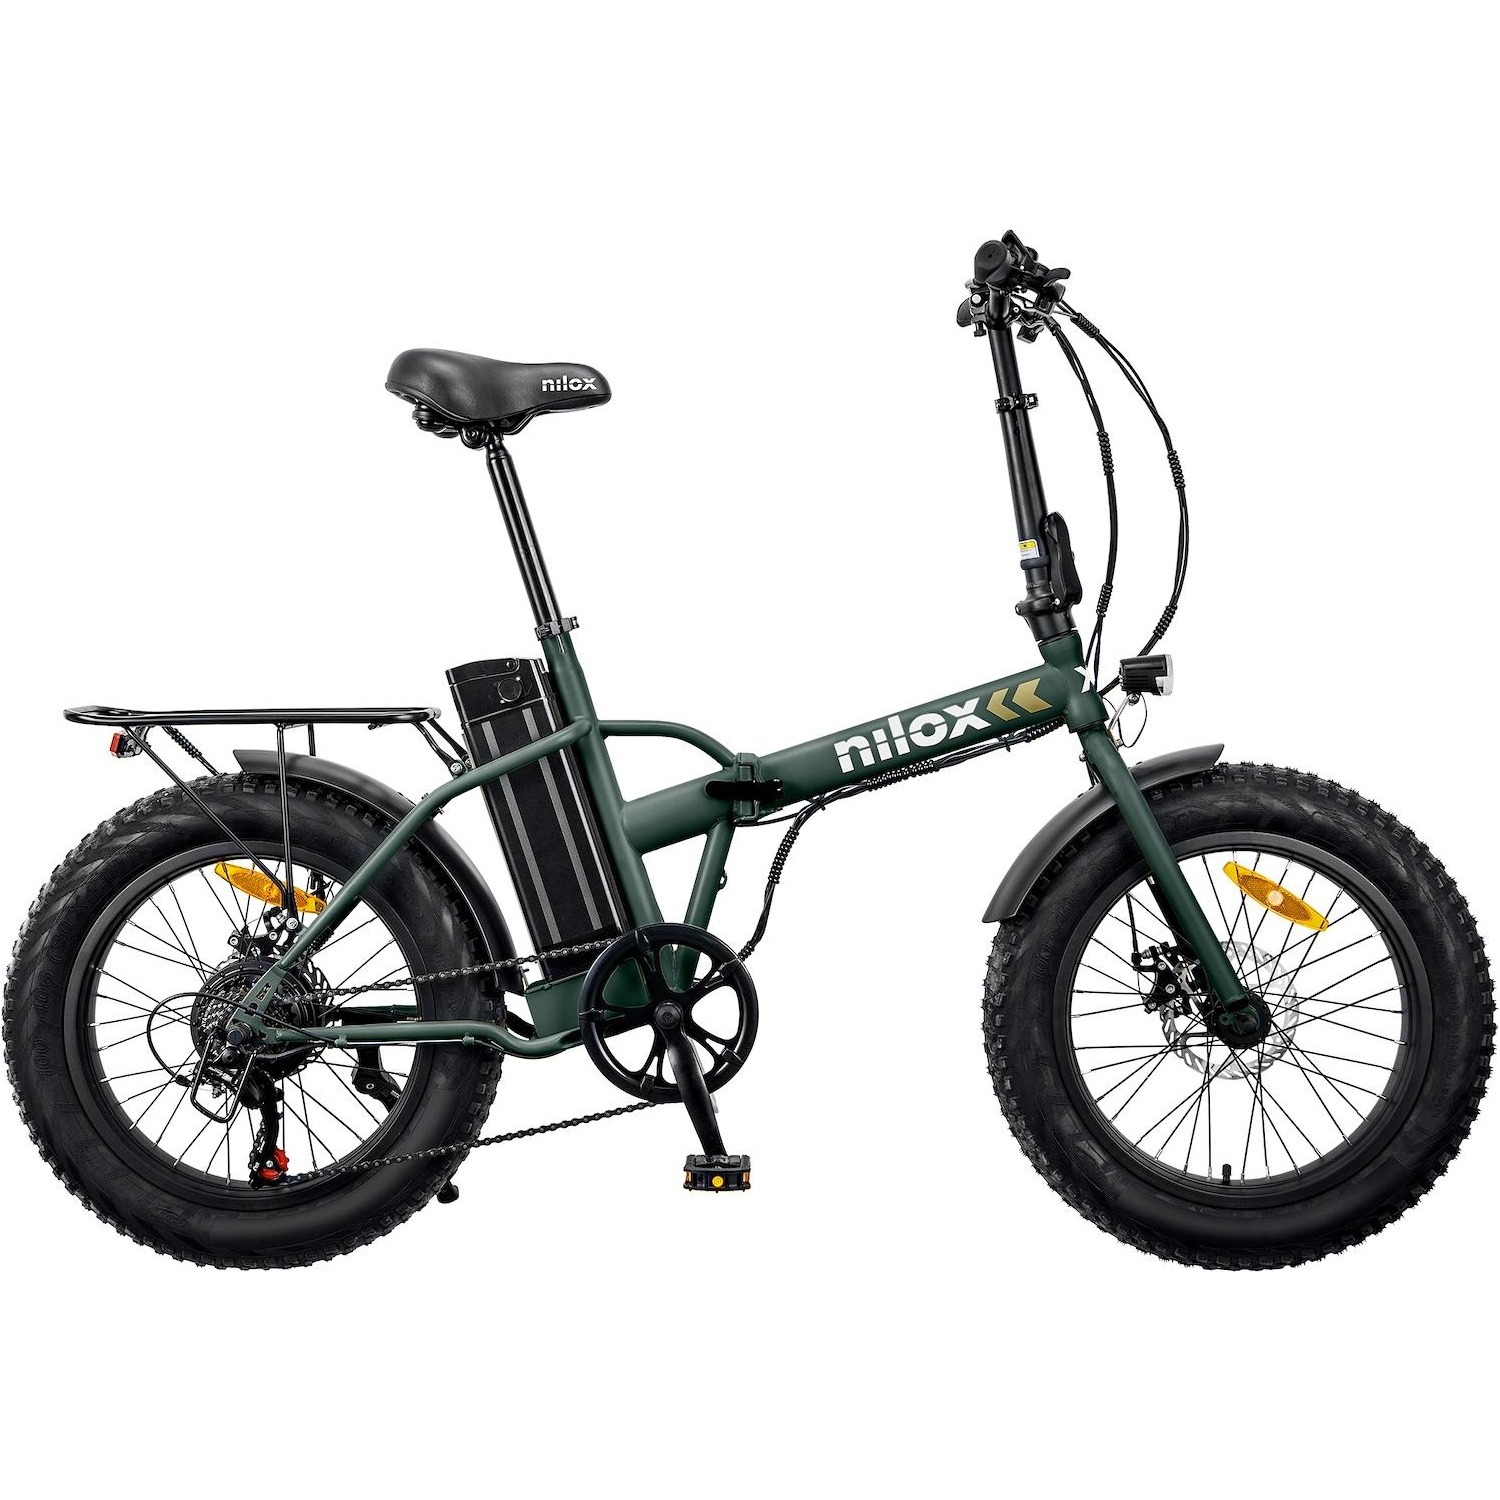 Image of NILOX Bicicletta Elettrica X8 Plus Ruote 20 36 Volt Motore 250 Watt Colore Vede Militare